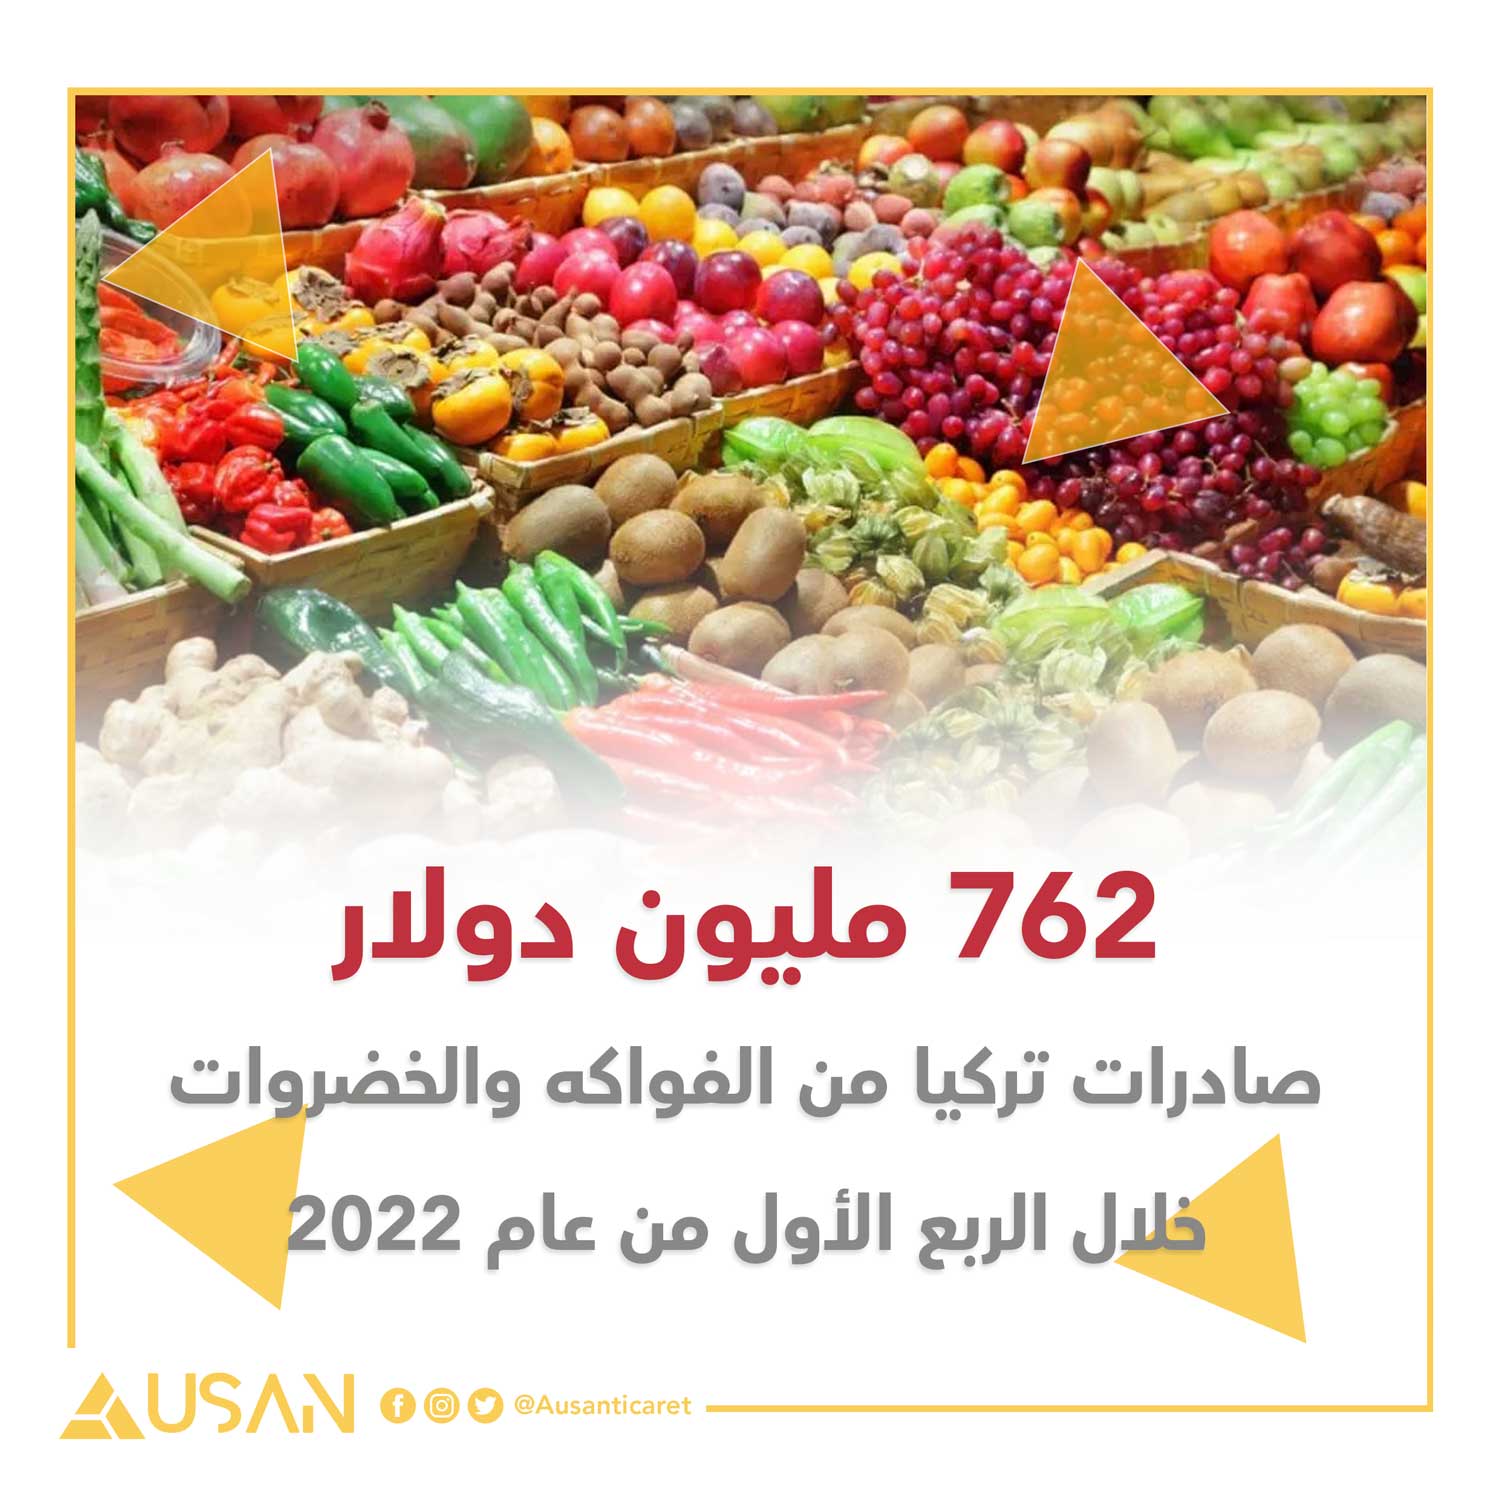 762 مليون دولار صادرات تركيا من الفواكه والخضروات خلال الربع الأول من عام 2022